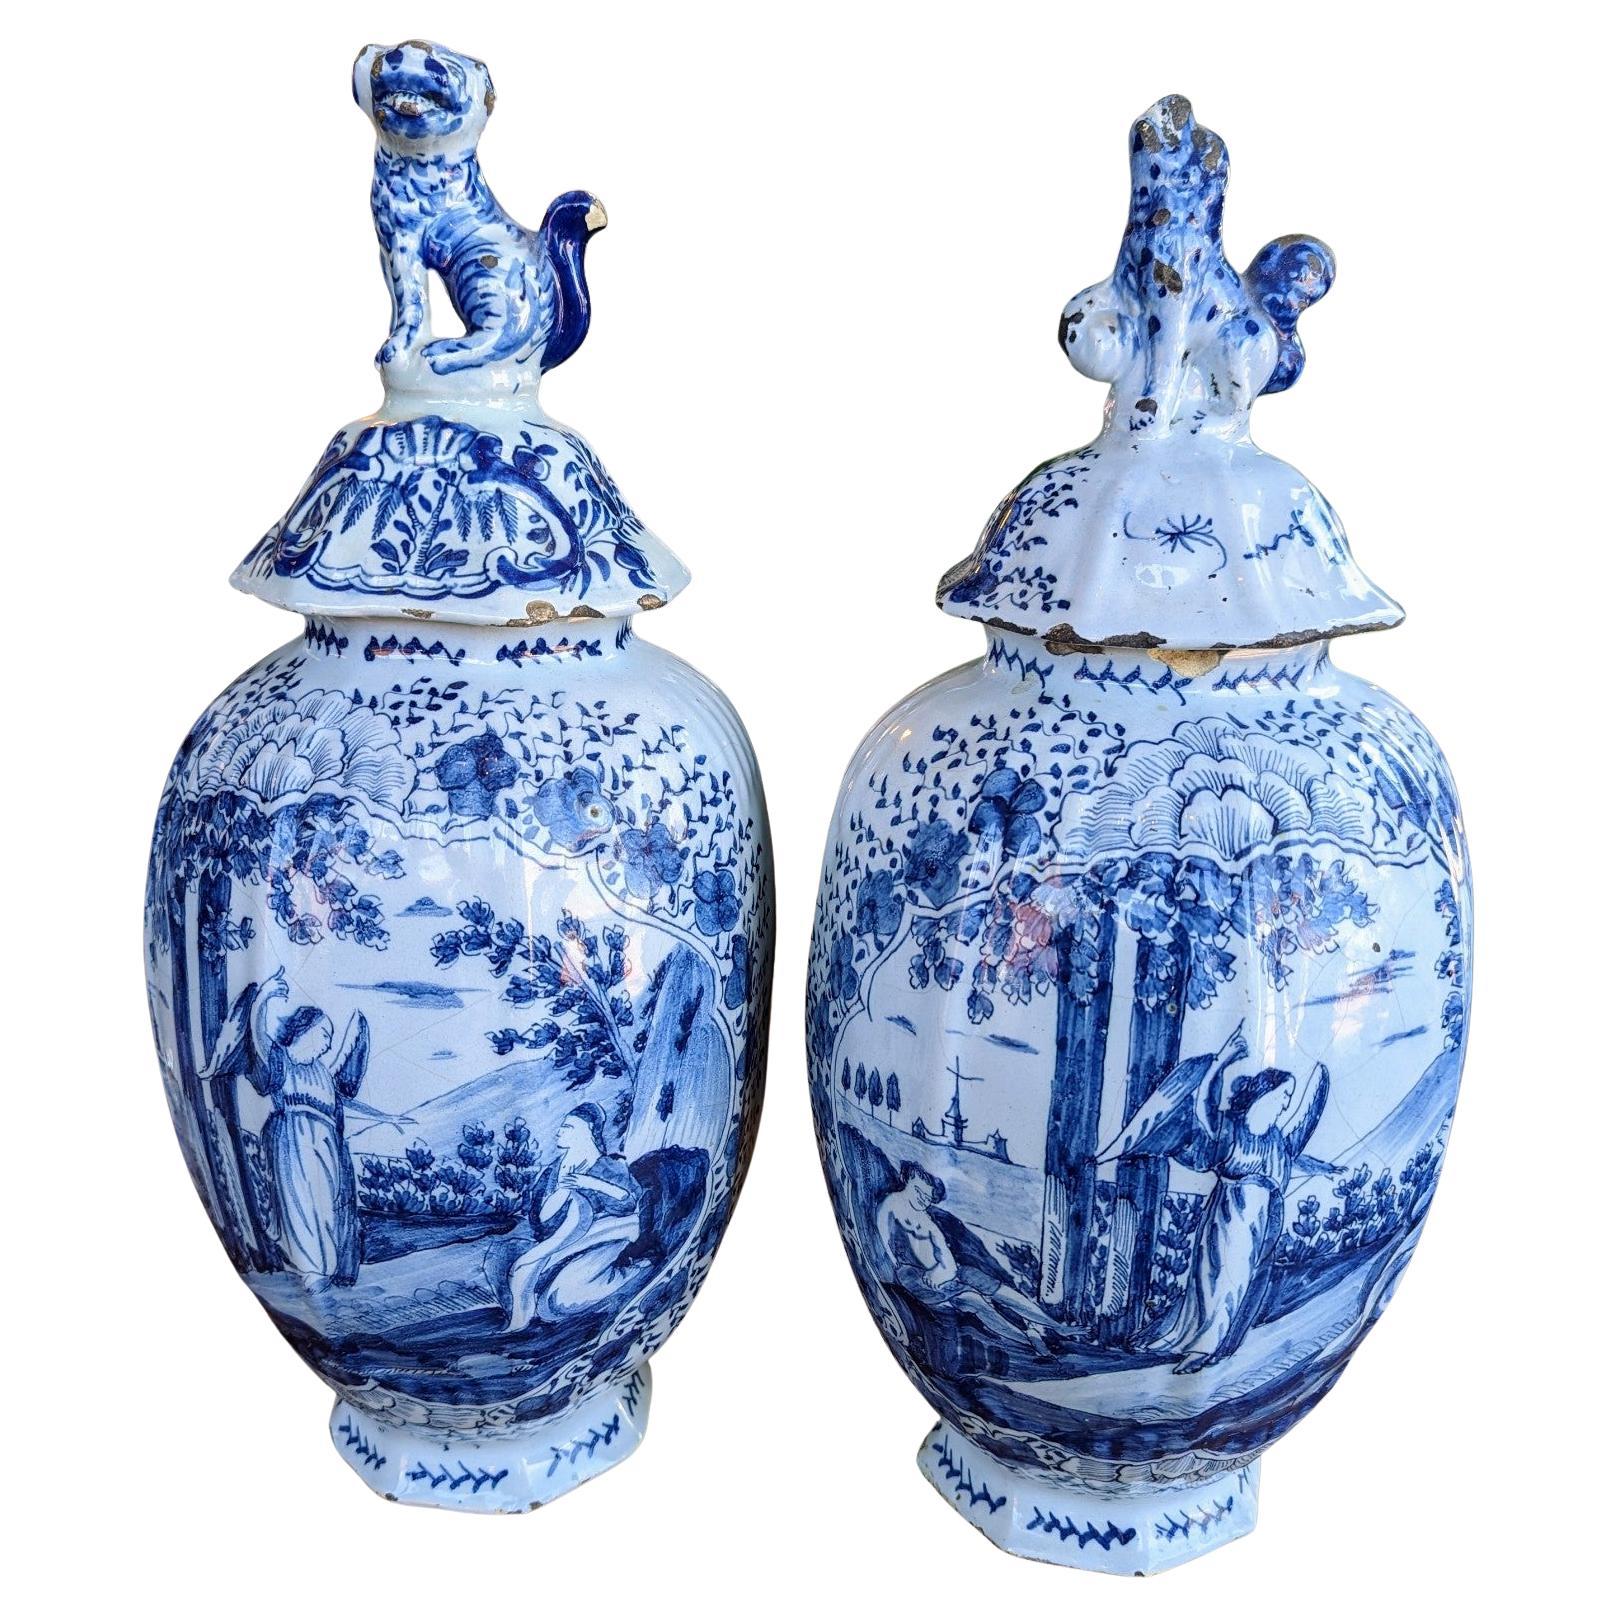 Paire de pots de temple en porcelaine asiatique bleu et blanc de style chinoiserie européenne ancienne